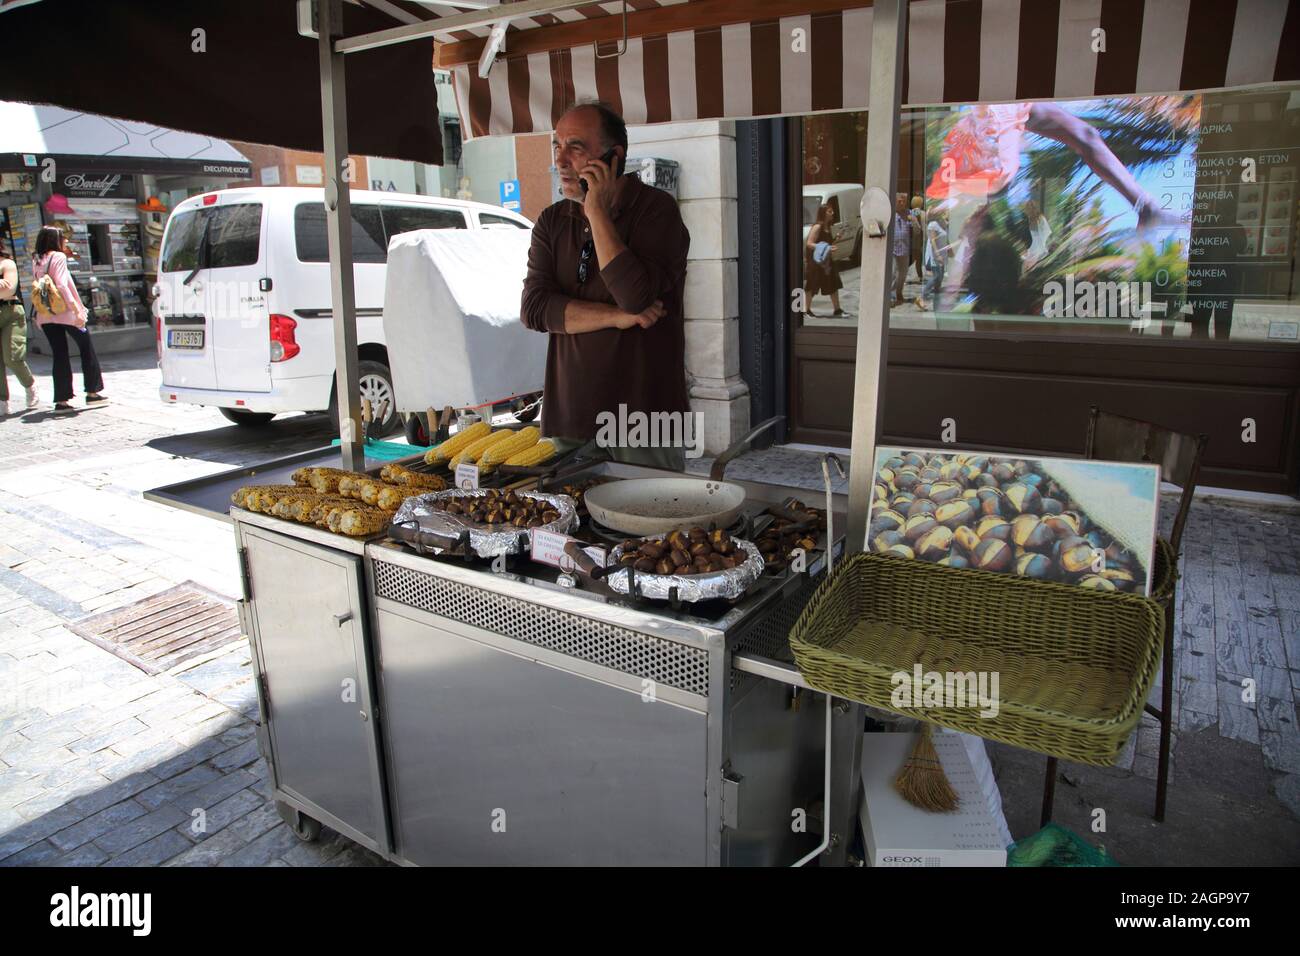 Atene Grecia Ermou Street Granturco dolce e castagne arrosto - Stallo Stallholder sul telefono cellulare Foto Stock